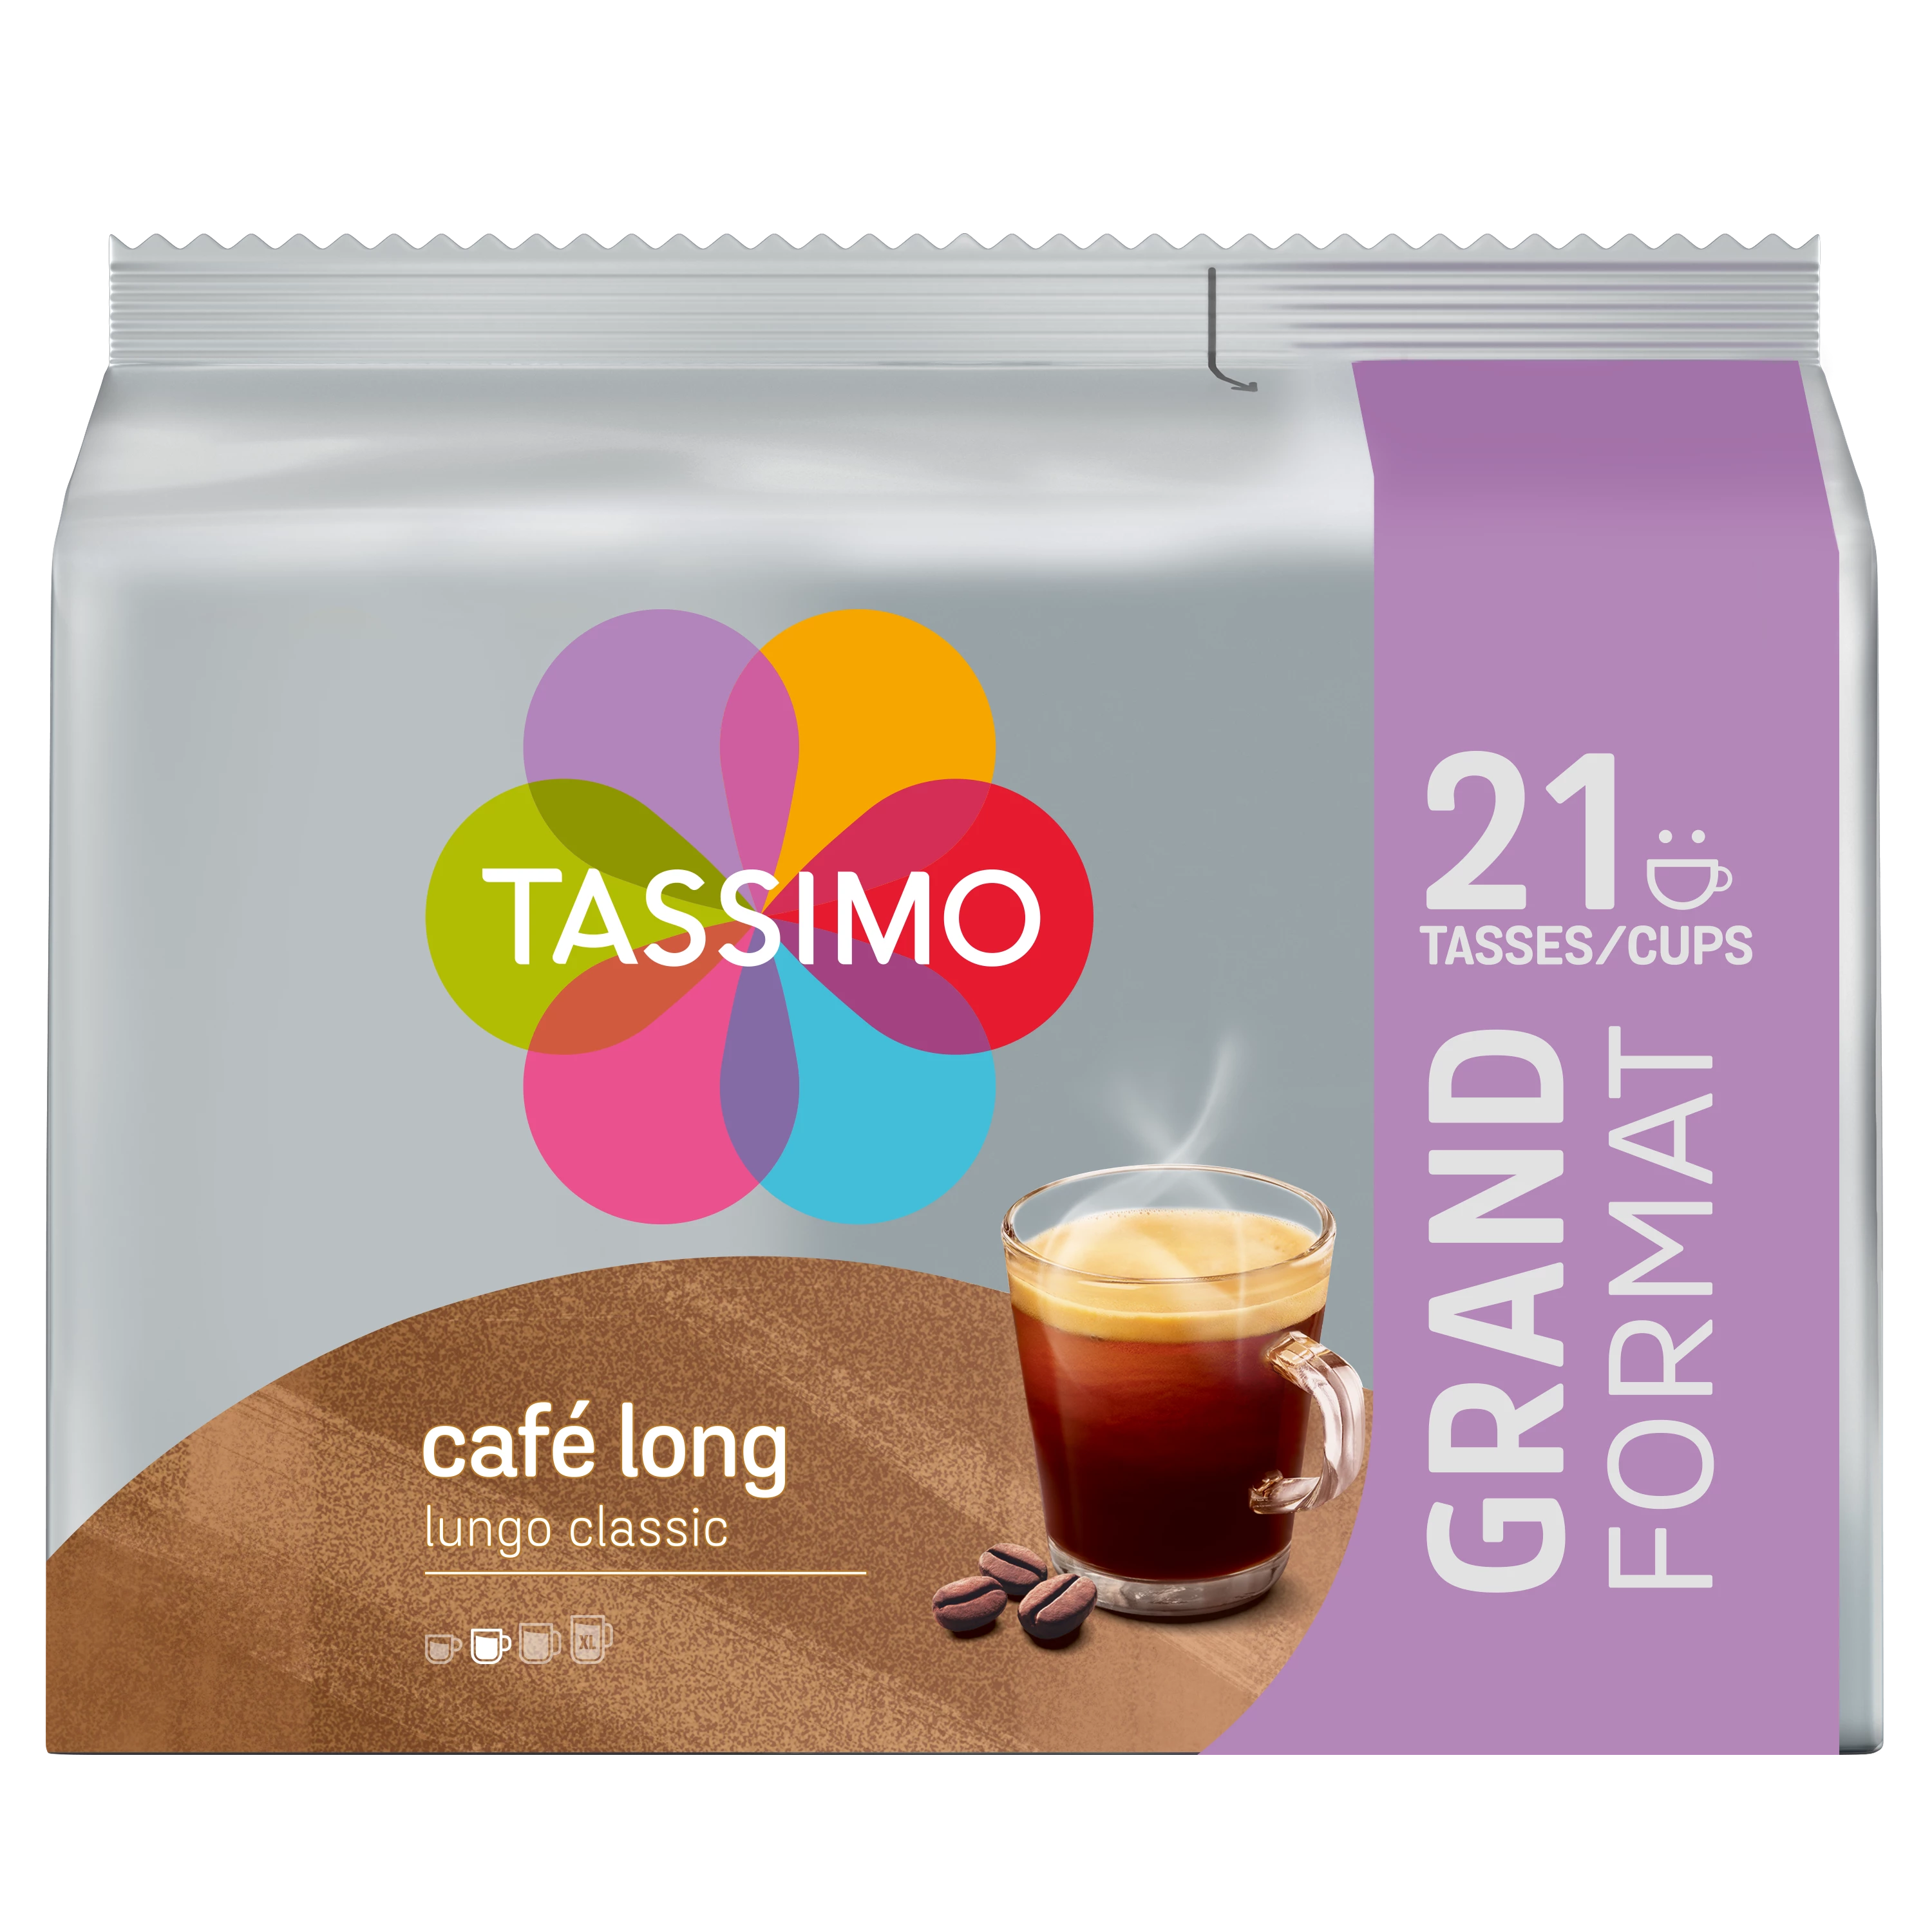 Tassimo 咖啡长类 X21 141g - TASSIMO